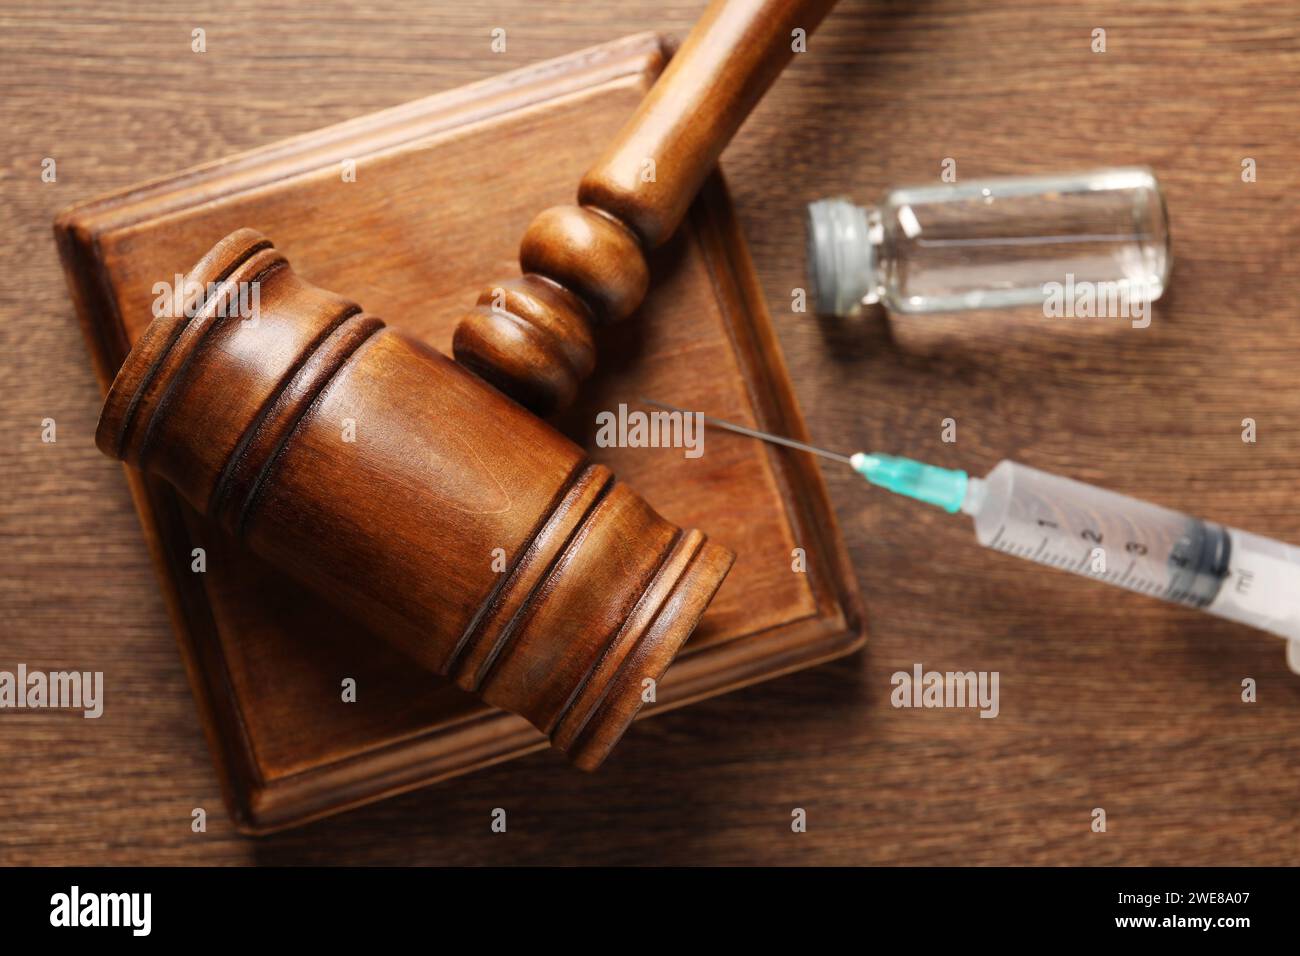 Concept de loi. Marteau, seringue et flacon en verre sur table en bois, vue de dessus Banque D'Images